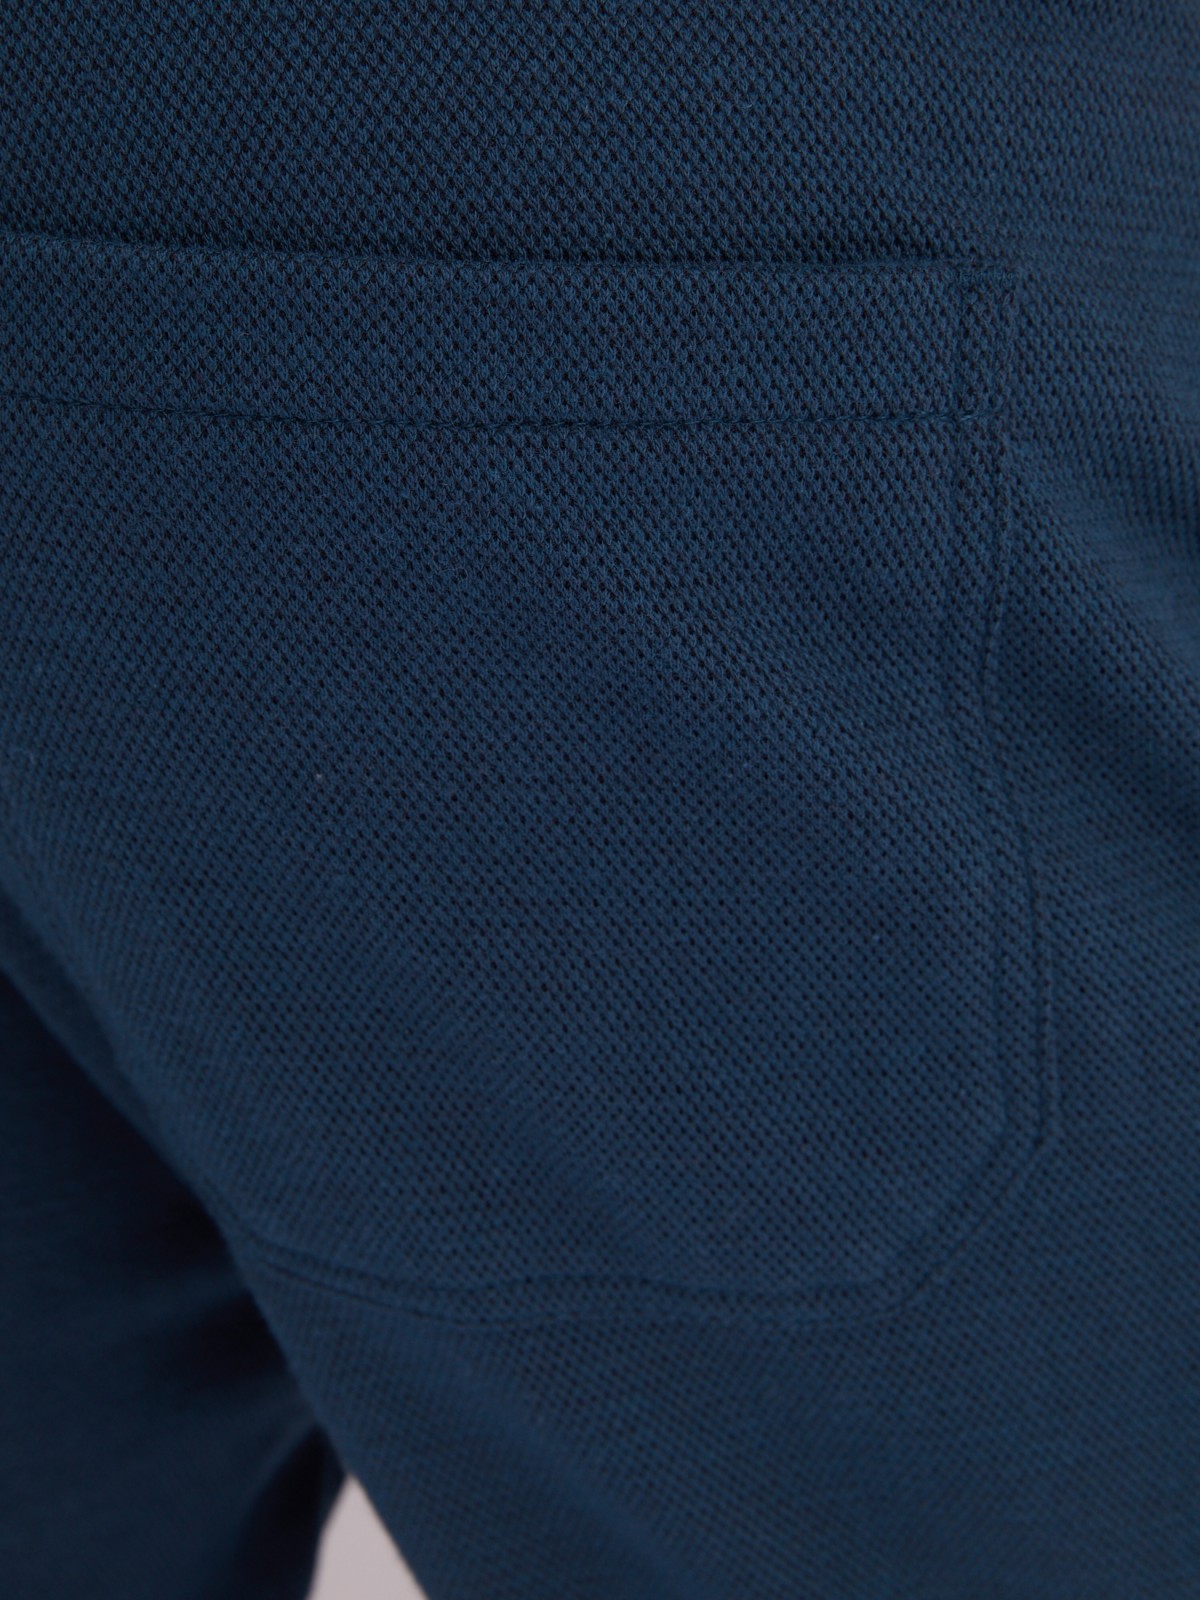 Трикотажные брюки-джоггеры в спортивном стиле zolla 21331762F012, цвет бирюзовый, размер S - фото 6